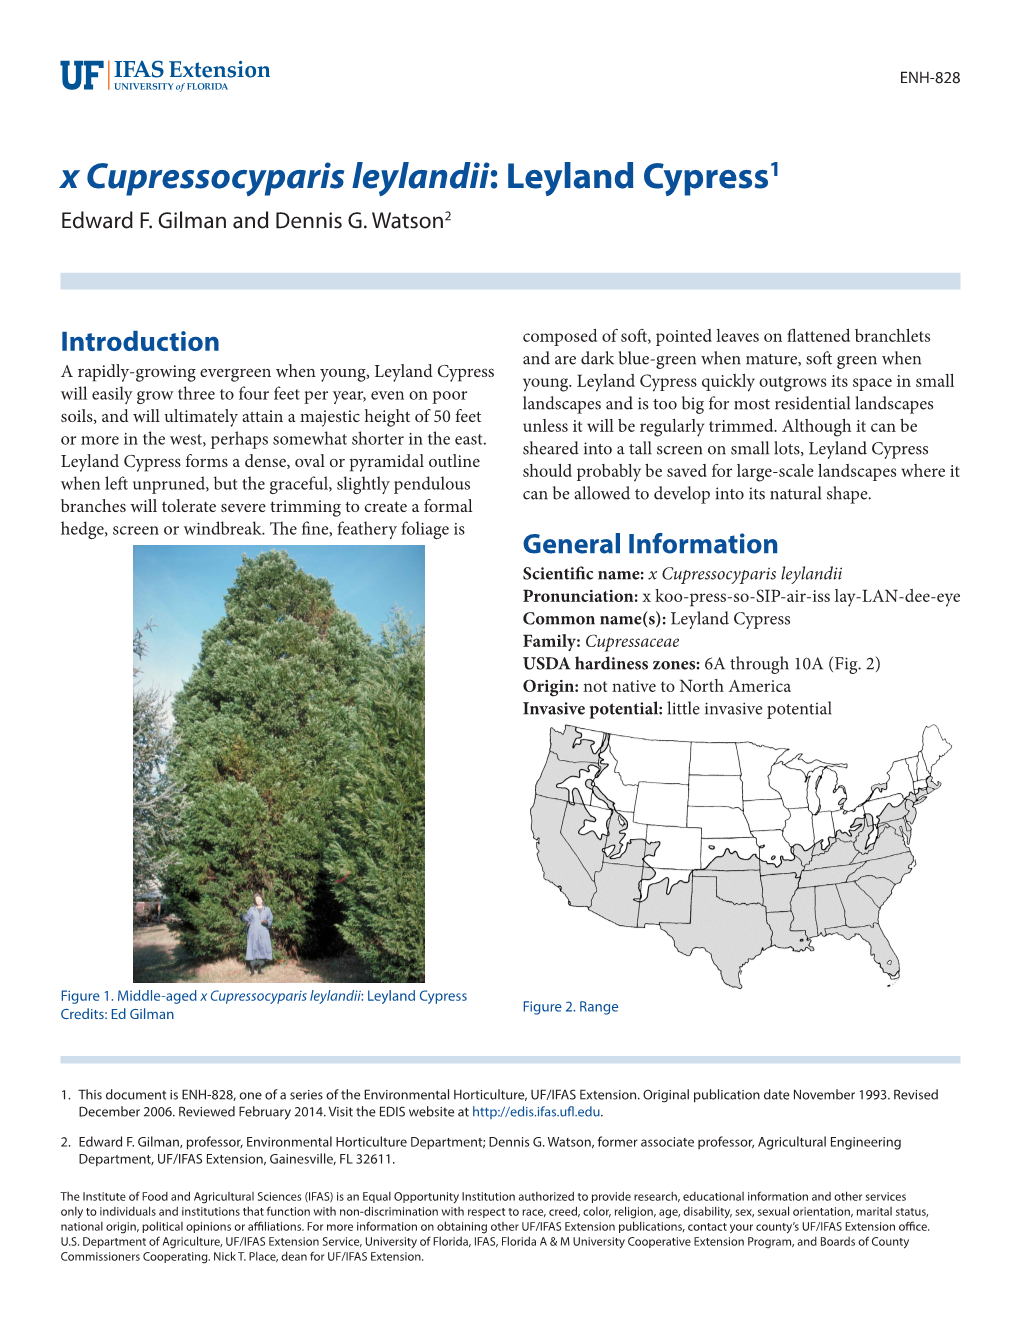 X Cupressocyparis Leylandii: Leyland Cypress1 Edward F